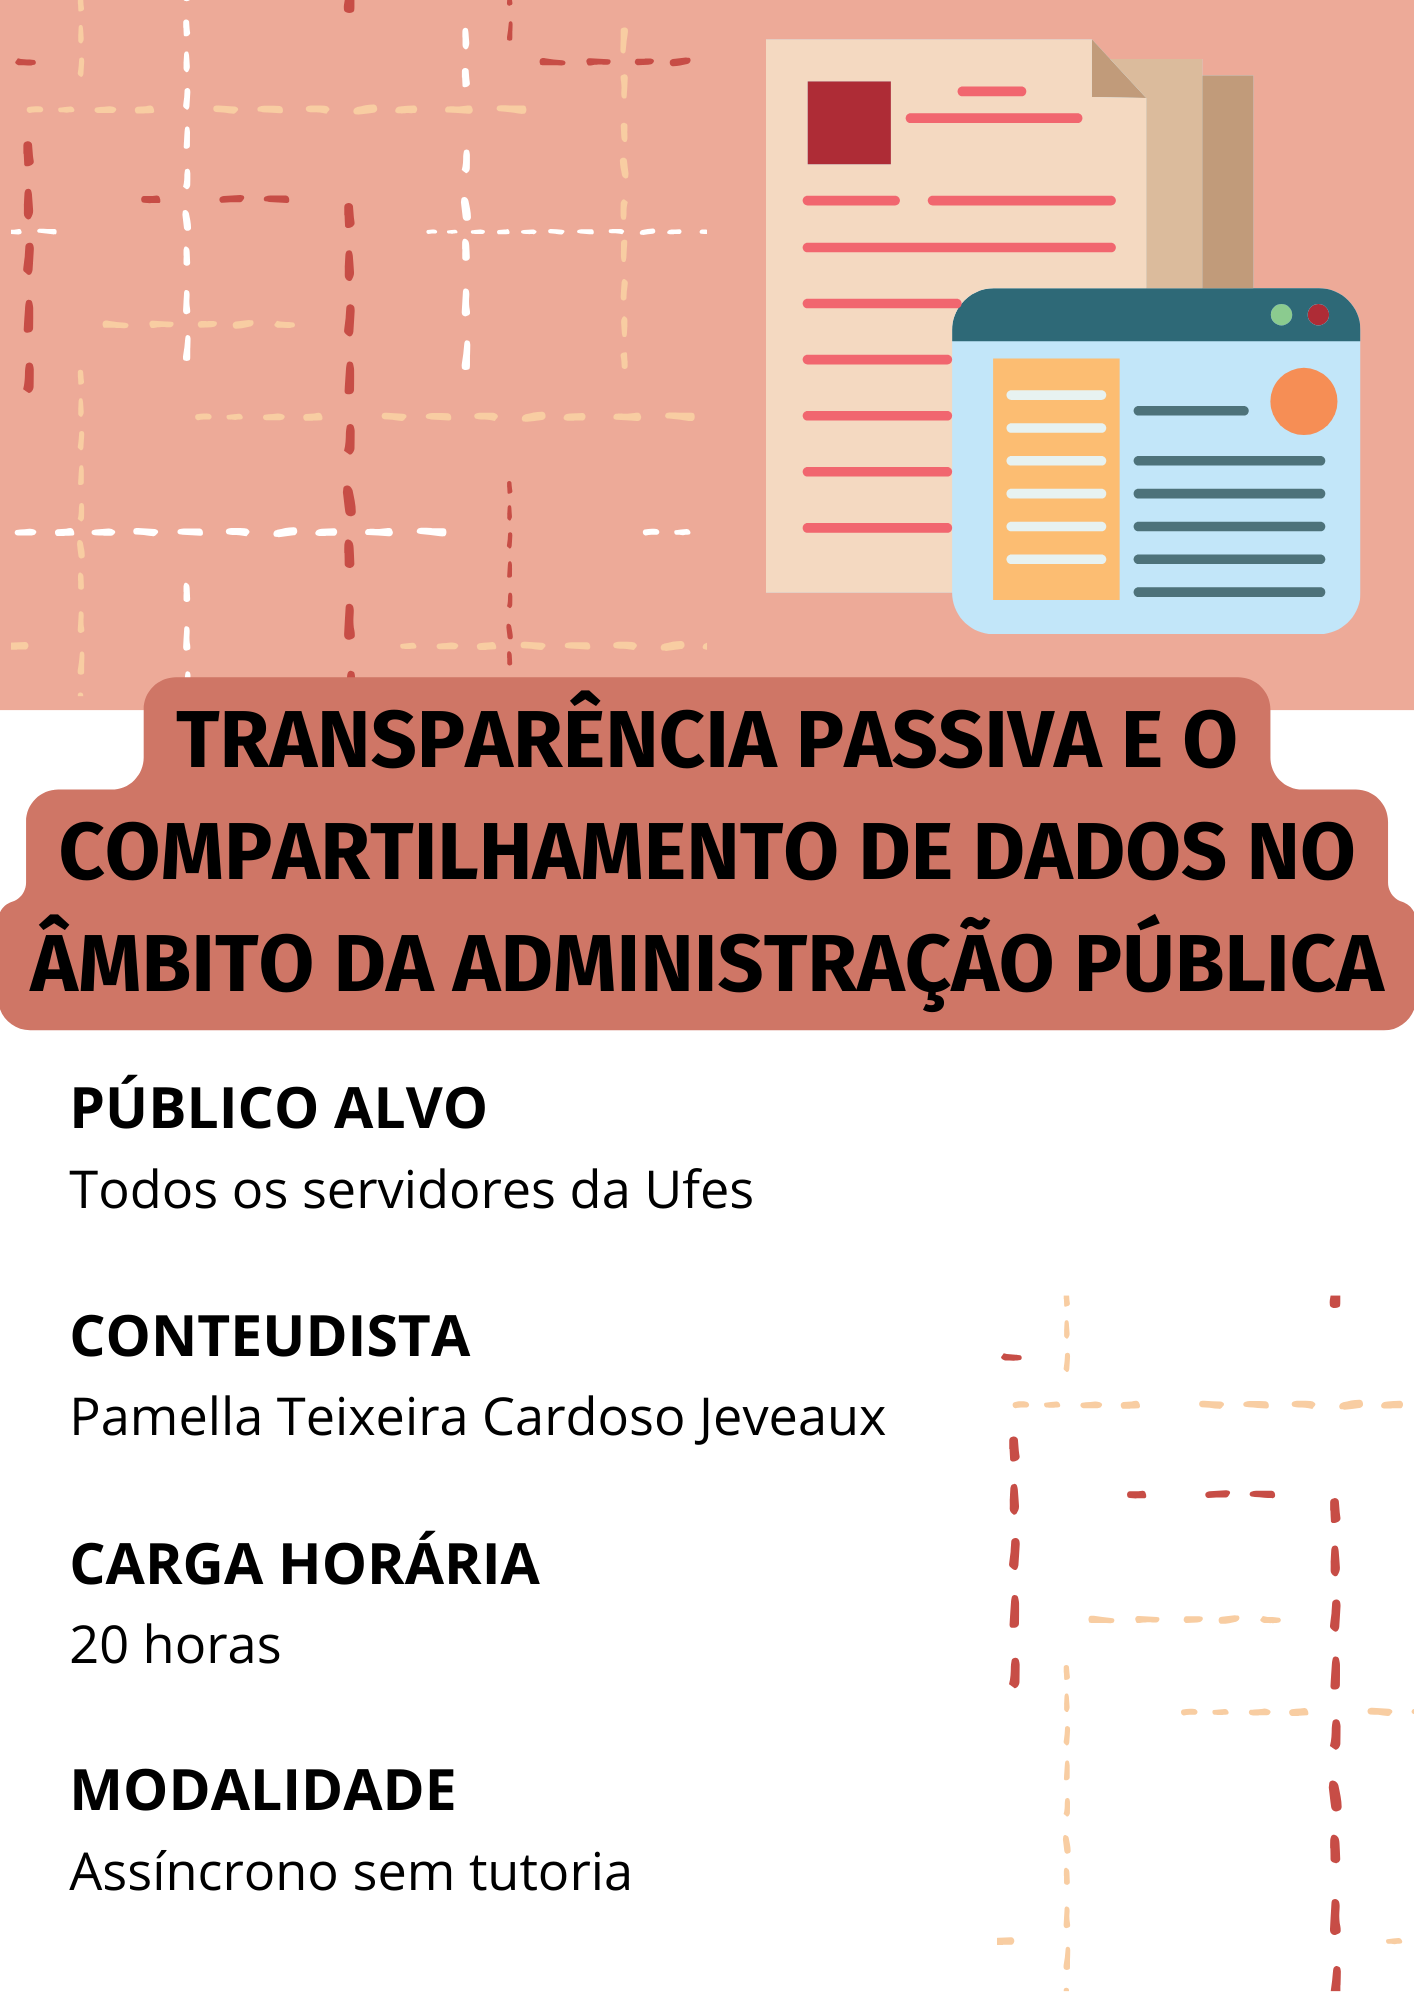 Transparência passiva e o compartilhamento de dados no âmbito da administração pública federal